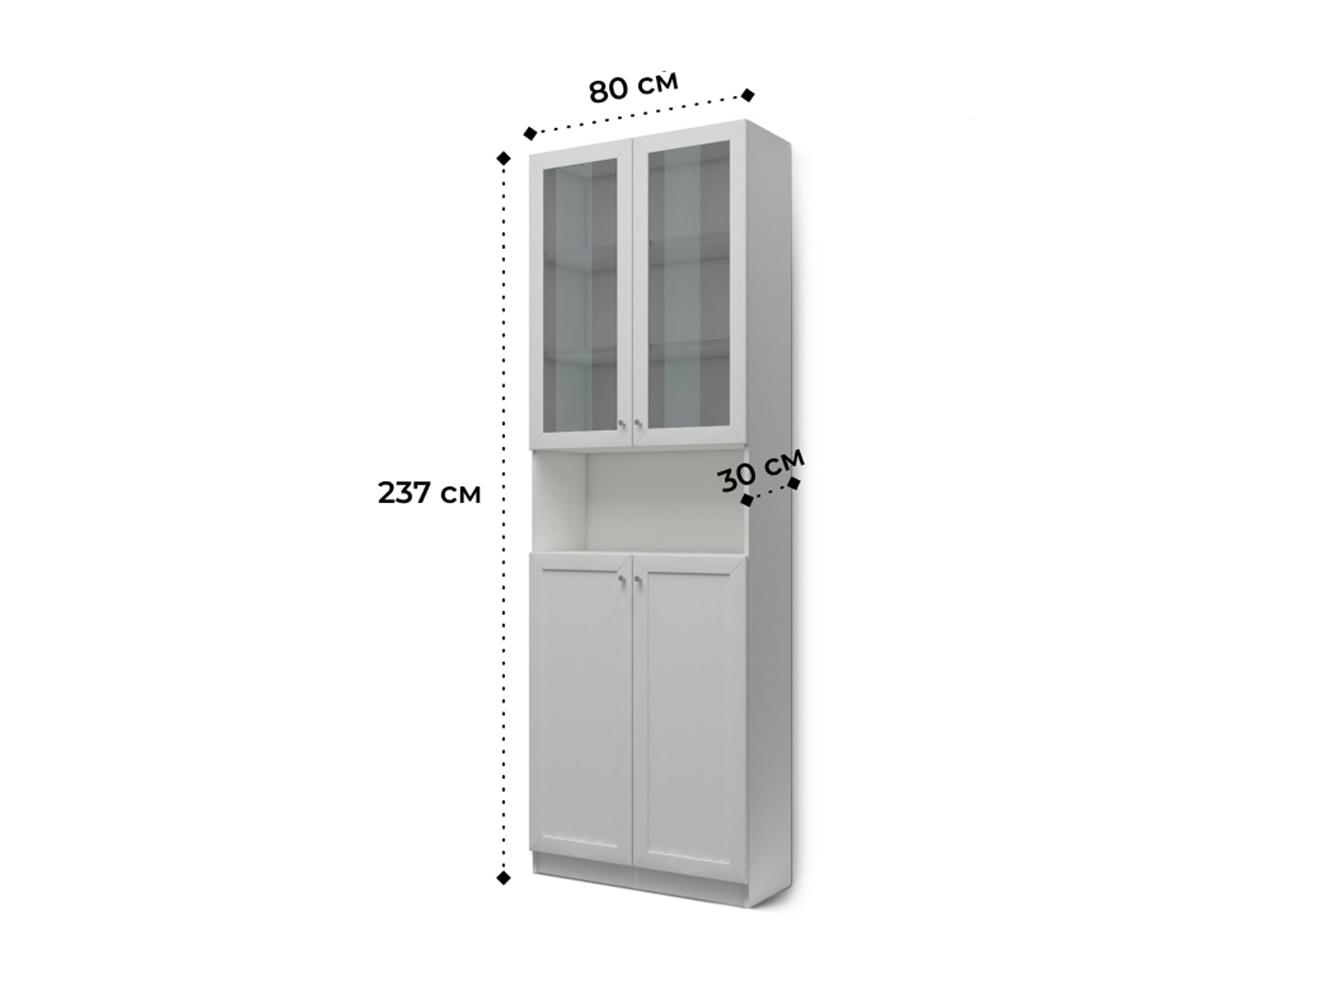  Книжный шкаф Билли 333 light brown ИКЕА (IKEA) изображение товара